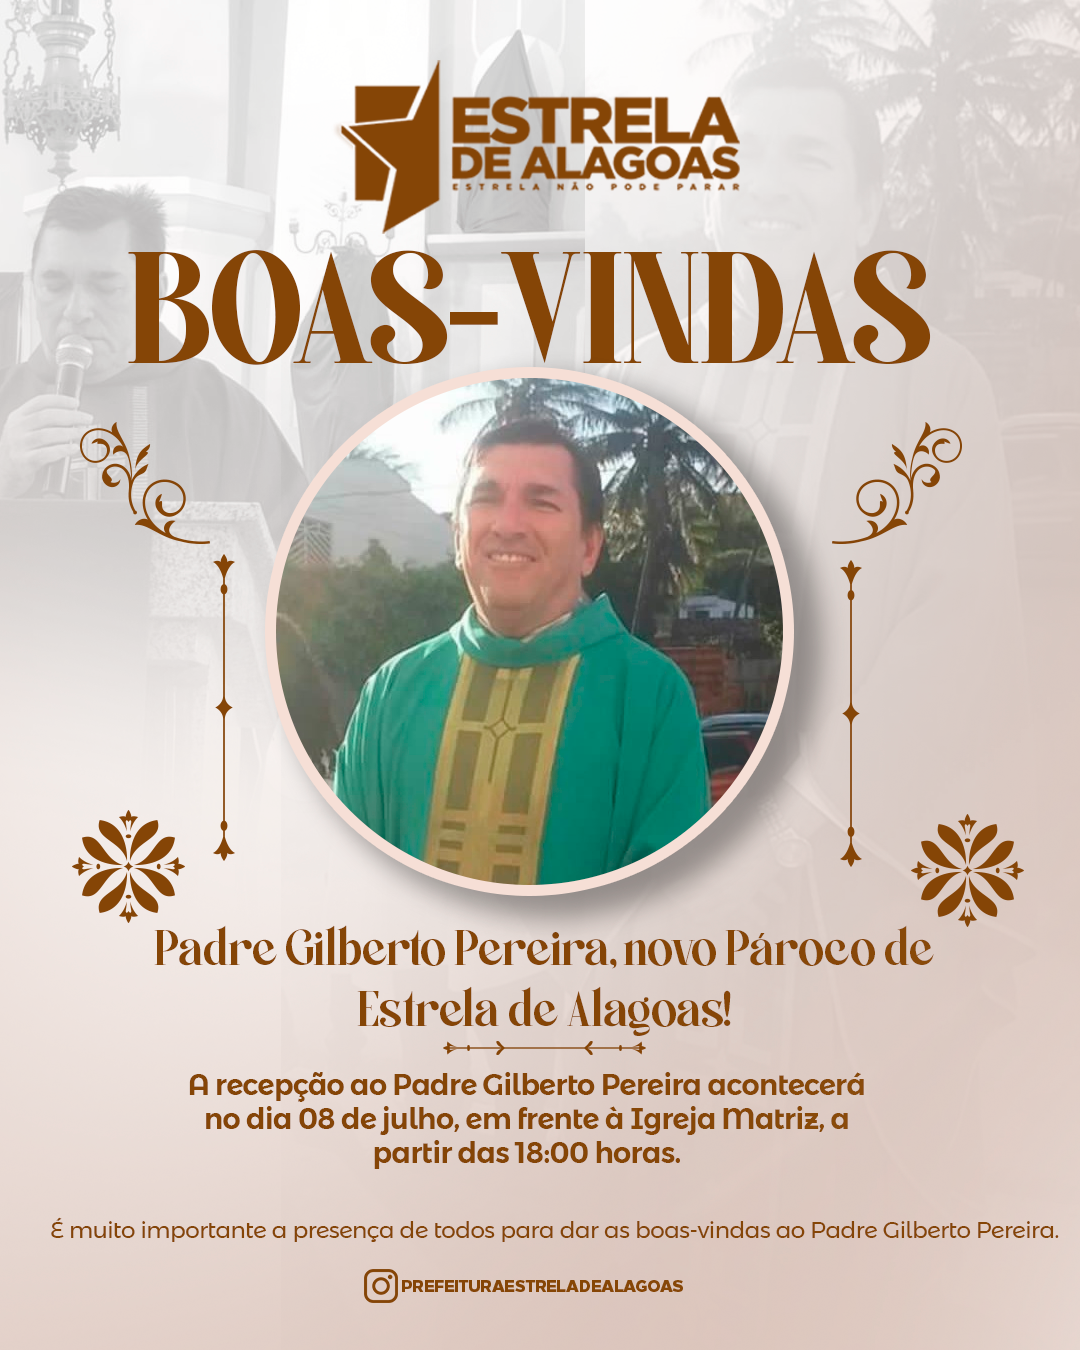 Boas-vindas ao Padre Gilberto Pereira, o novo Pároco de Estrela de Alagoas!